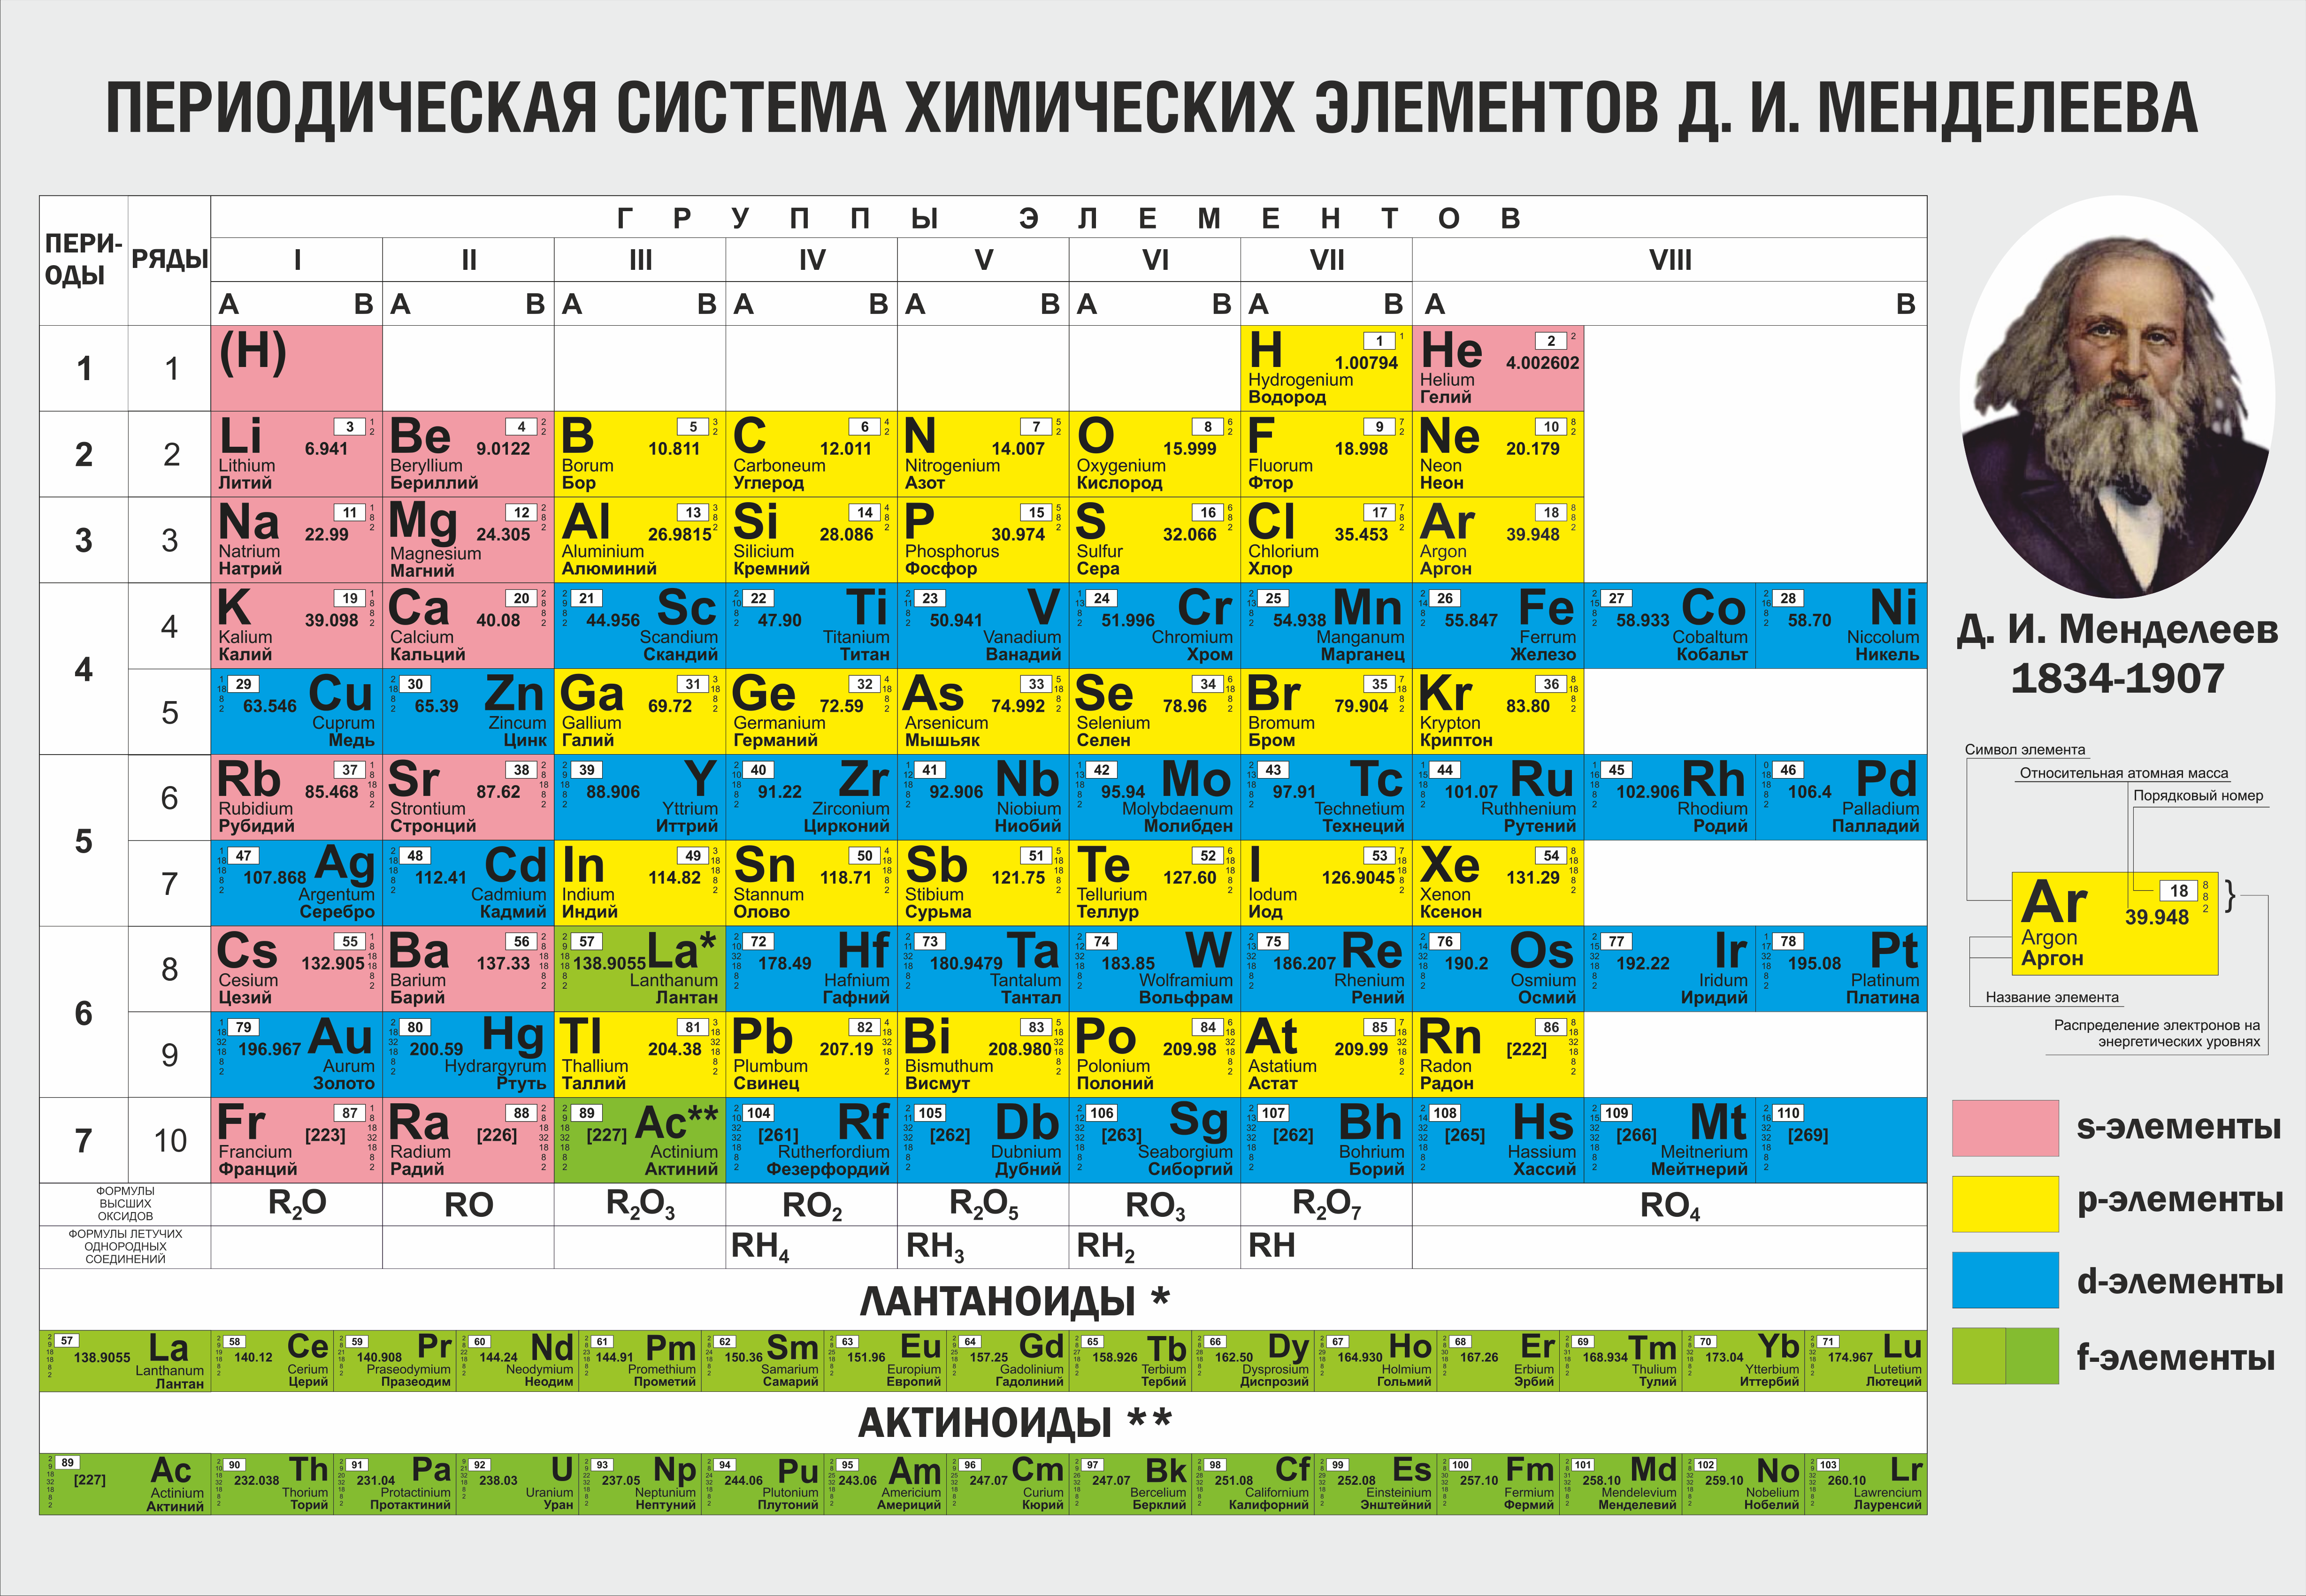 U какой химический элемент. Таблица периодических элементов Менделеева. Таблица переводческой системы химических элементов Менделеева. Химические элементы д и Менделеева. Периодическая система химических элементов д.и Менделеева 7 класс.